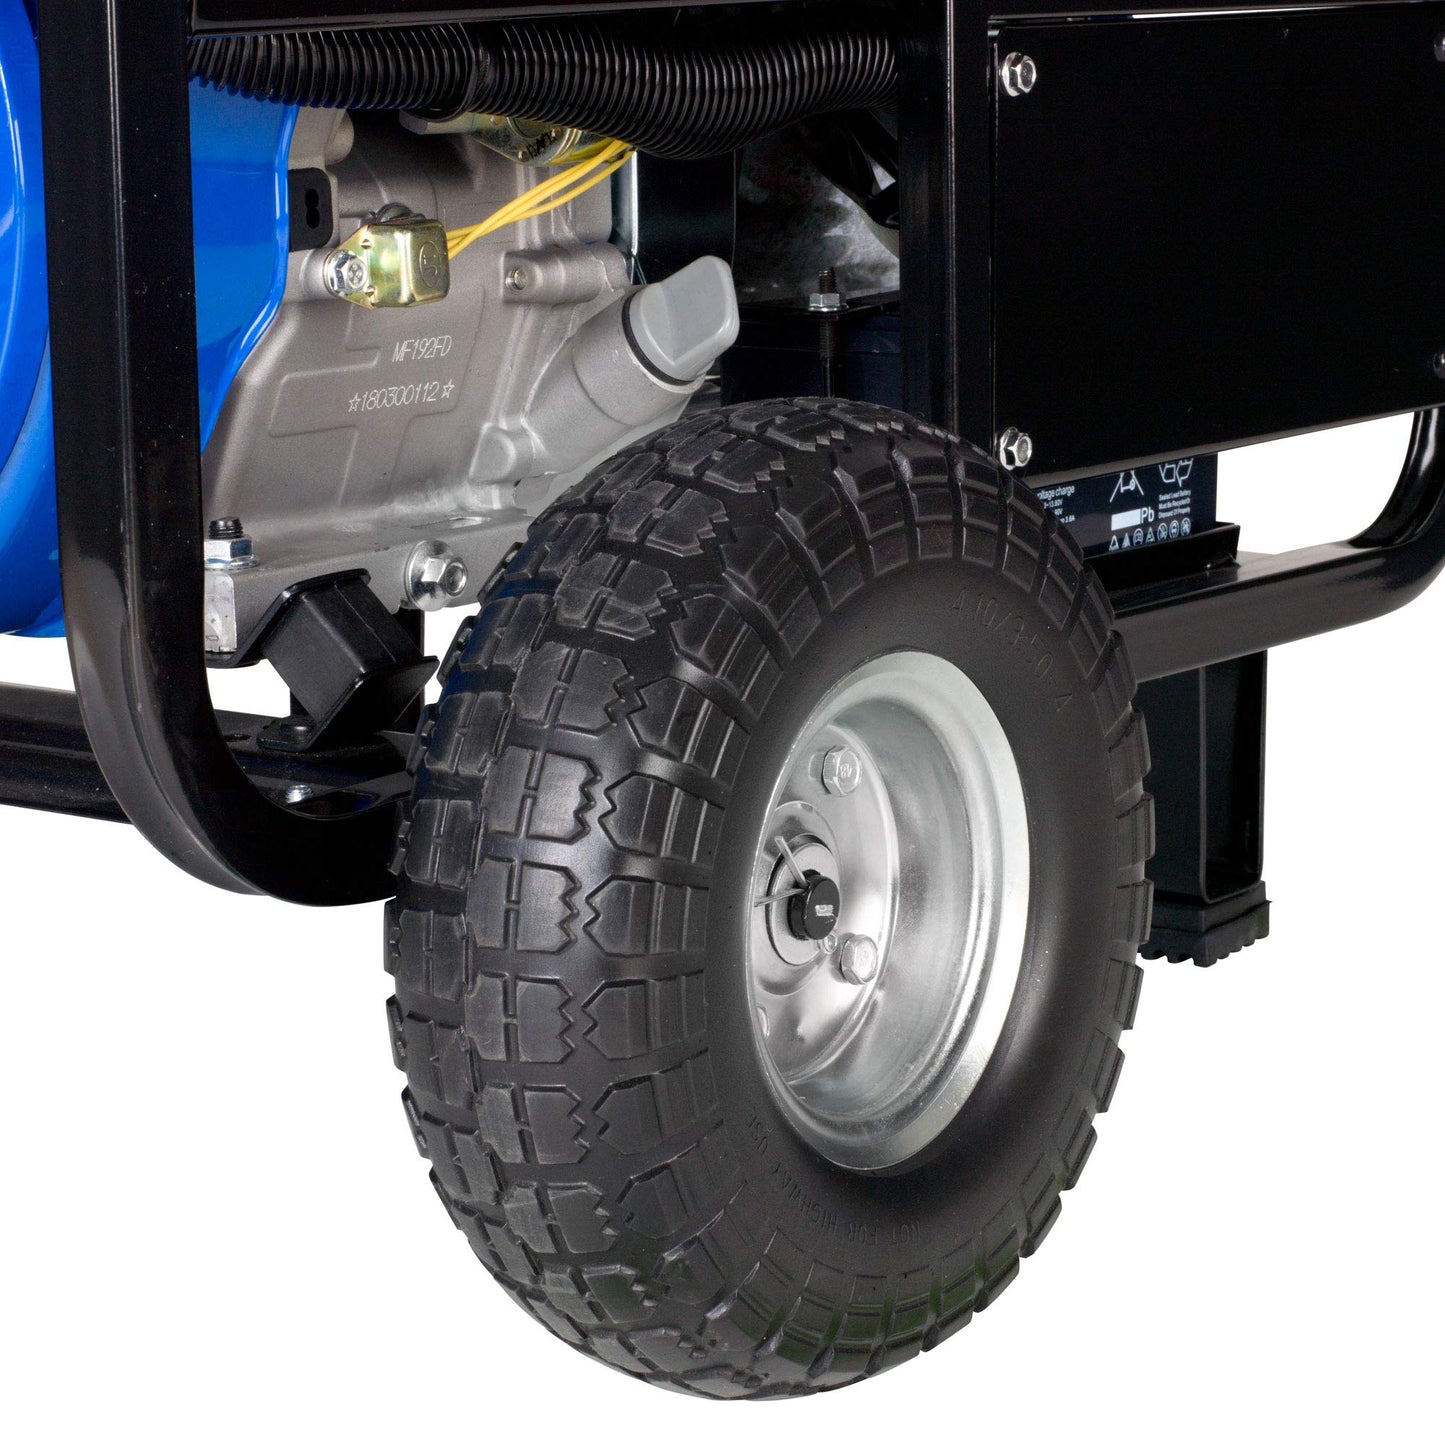 DuroMax XP10000E Générateur portable à gaz - 10 000 W - Démarrage électrique - Sauvegarde domestique et prêt pour camping-car - Approuvé par 50 États - Bleu/noir - 10 000 W 